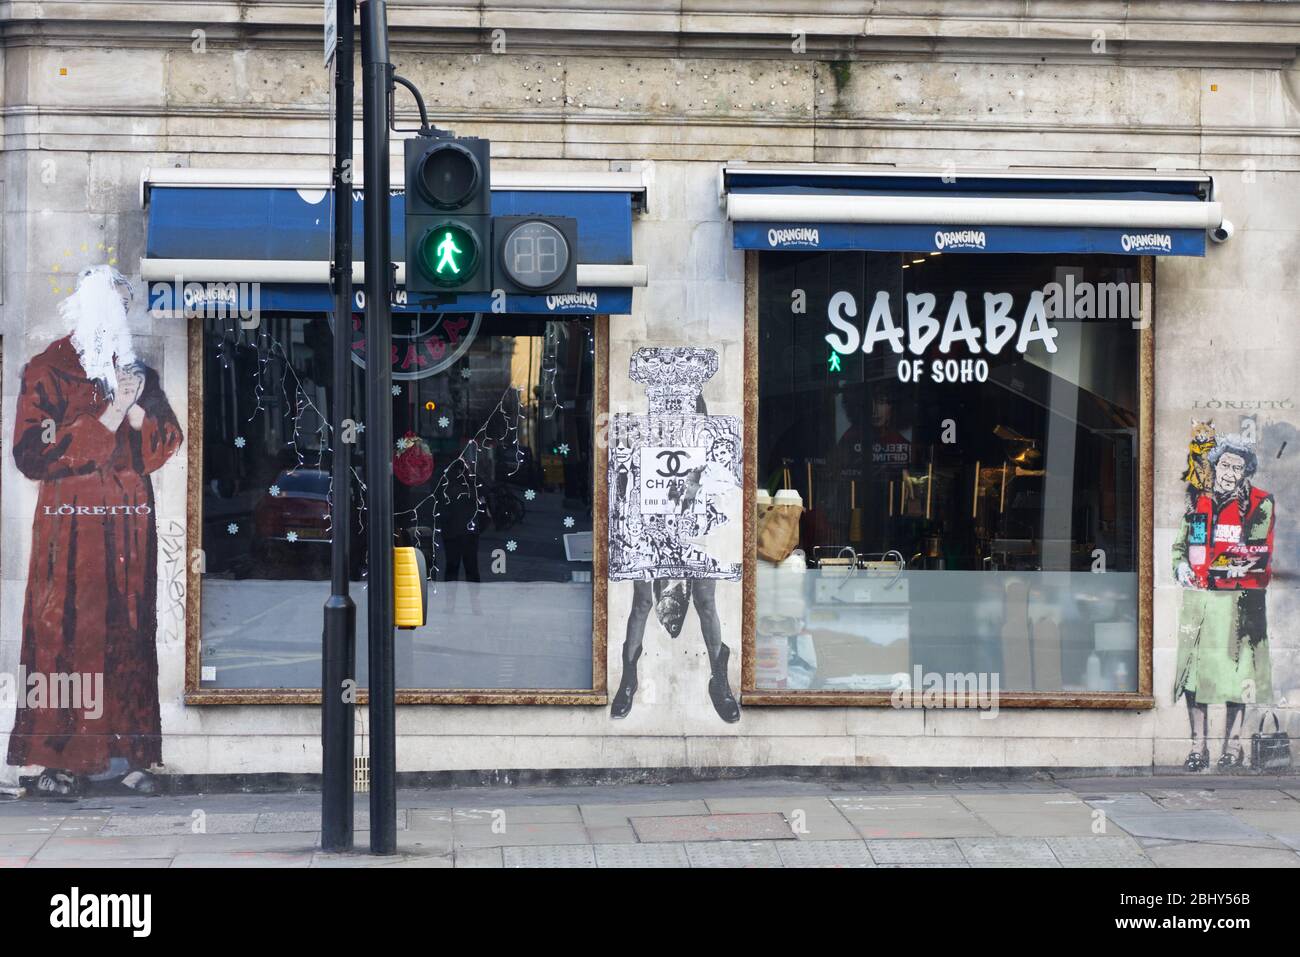 Sababa of soho, London Stock Photo